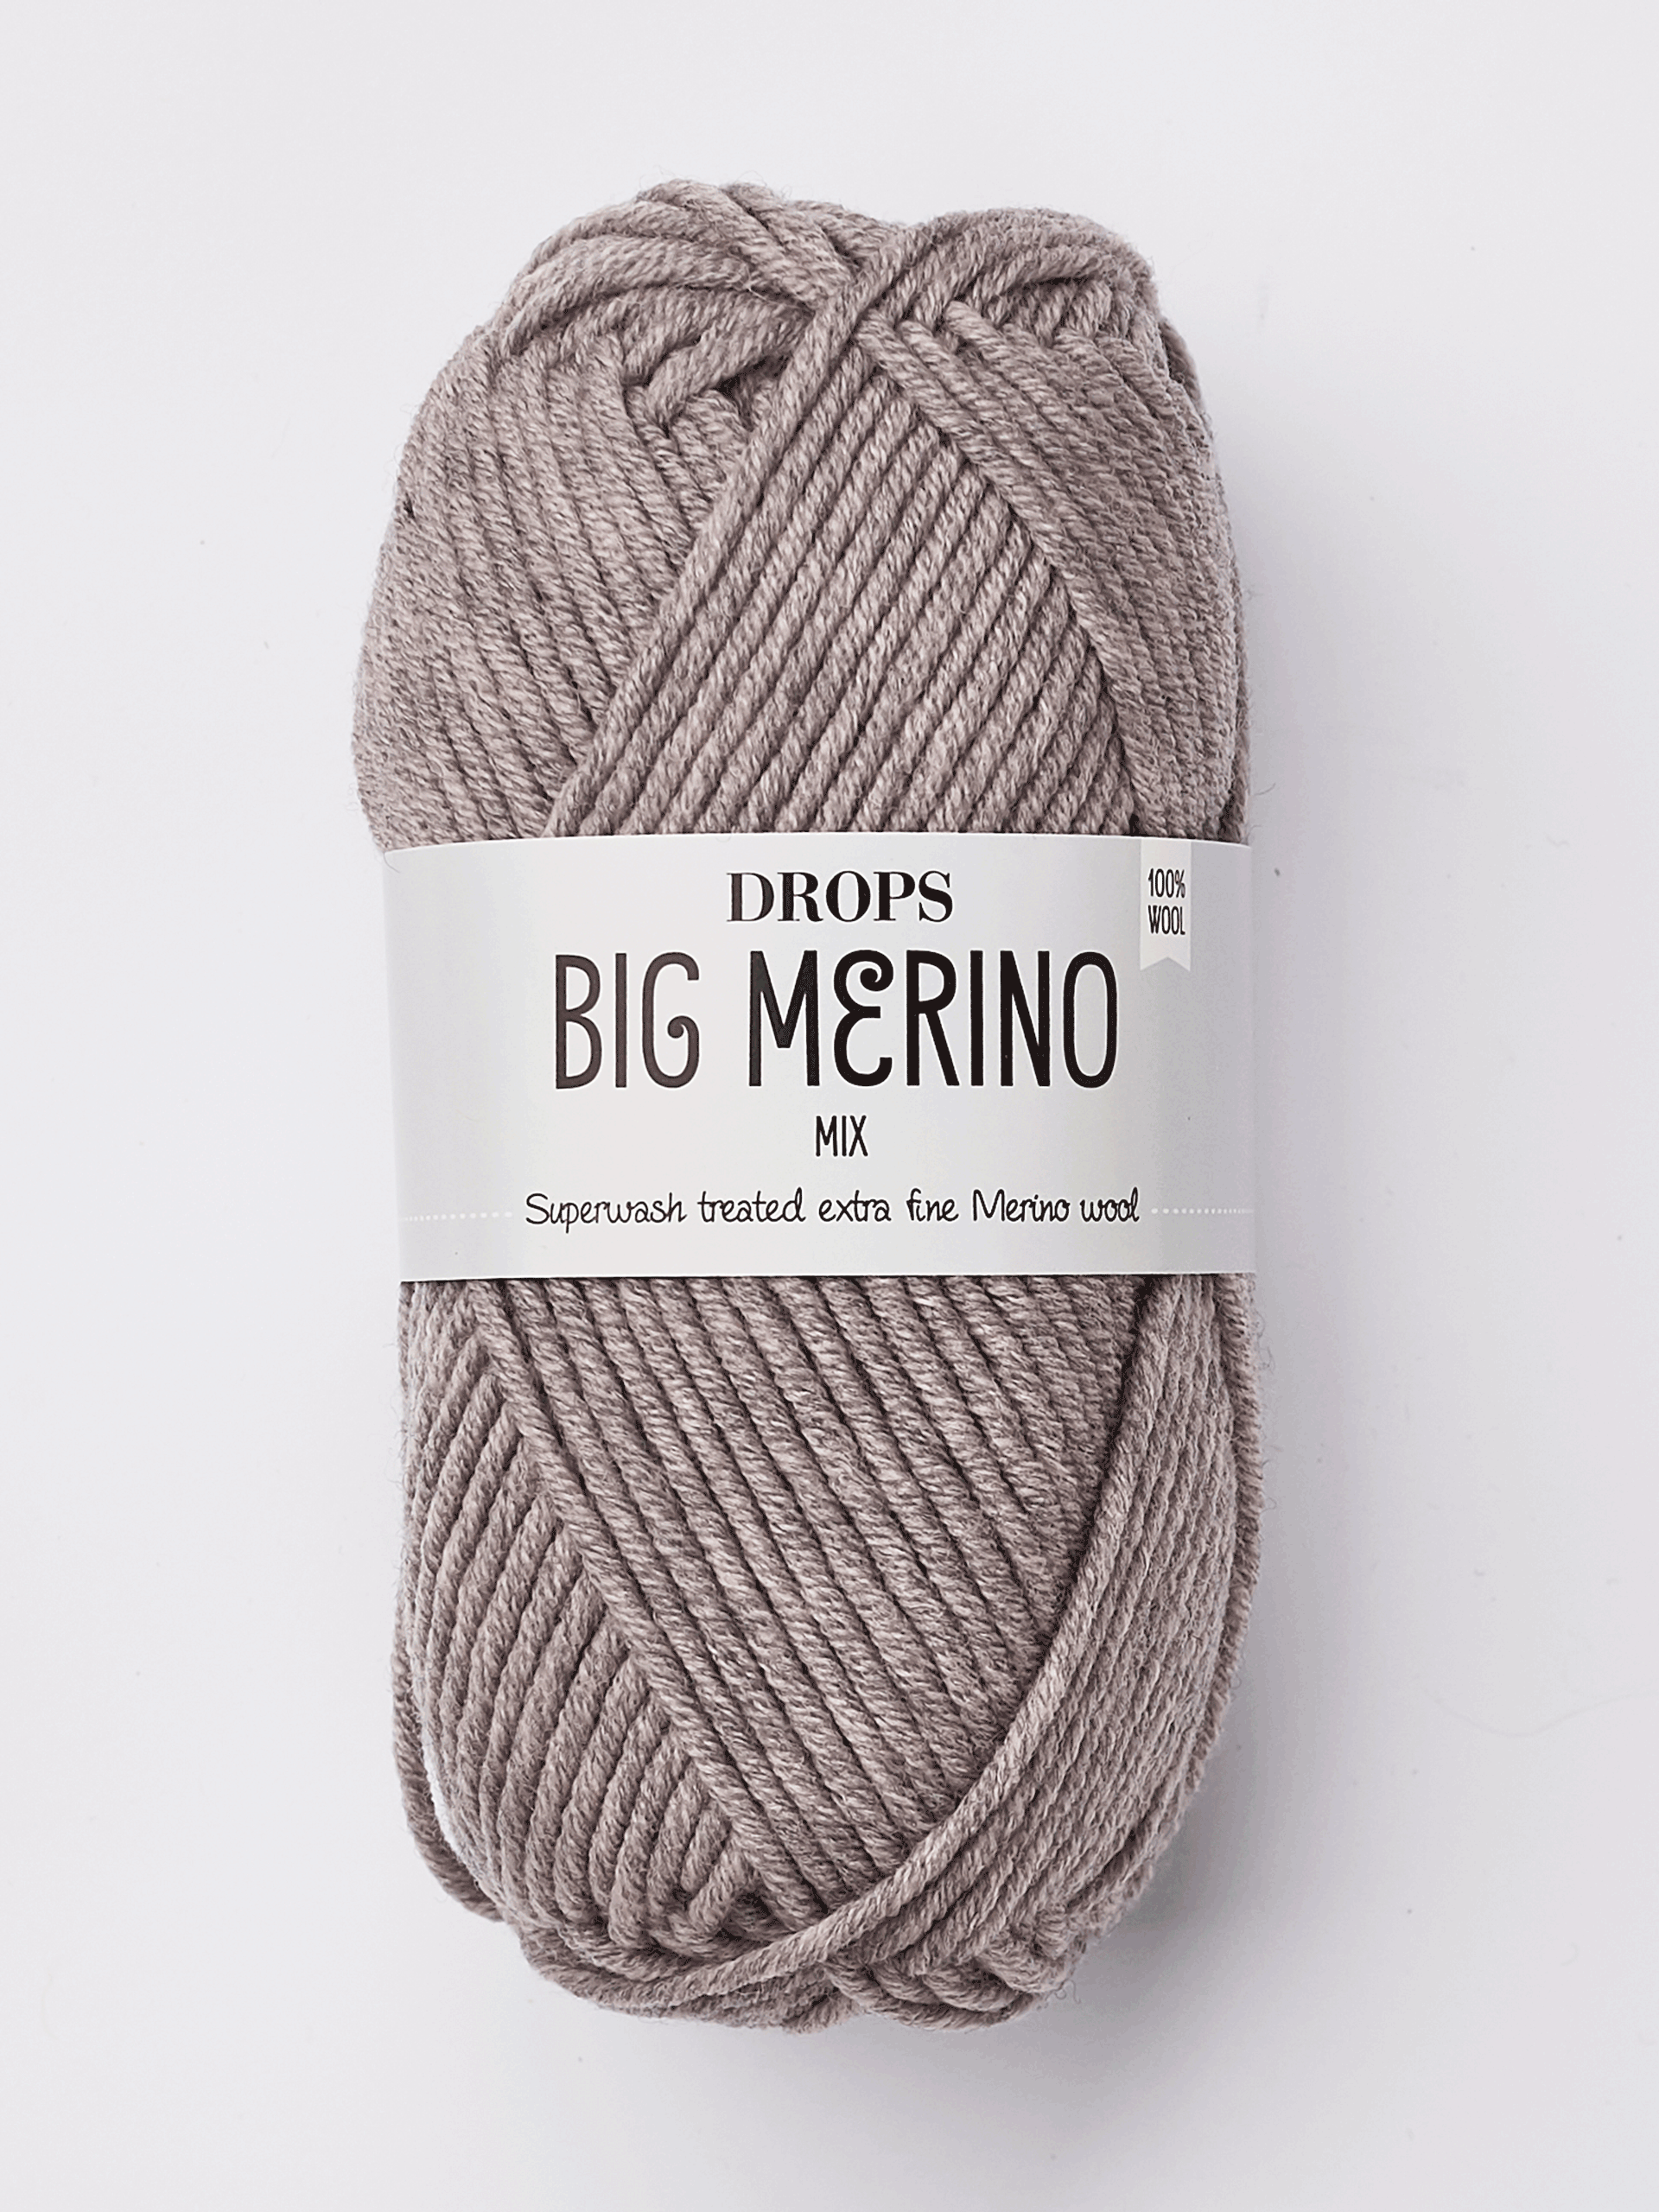 DROPS Big Merino - Superwash treated extra fine merino wool